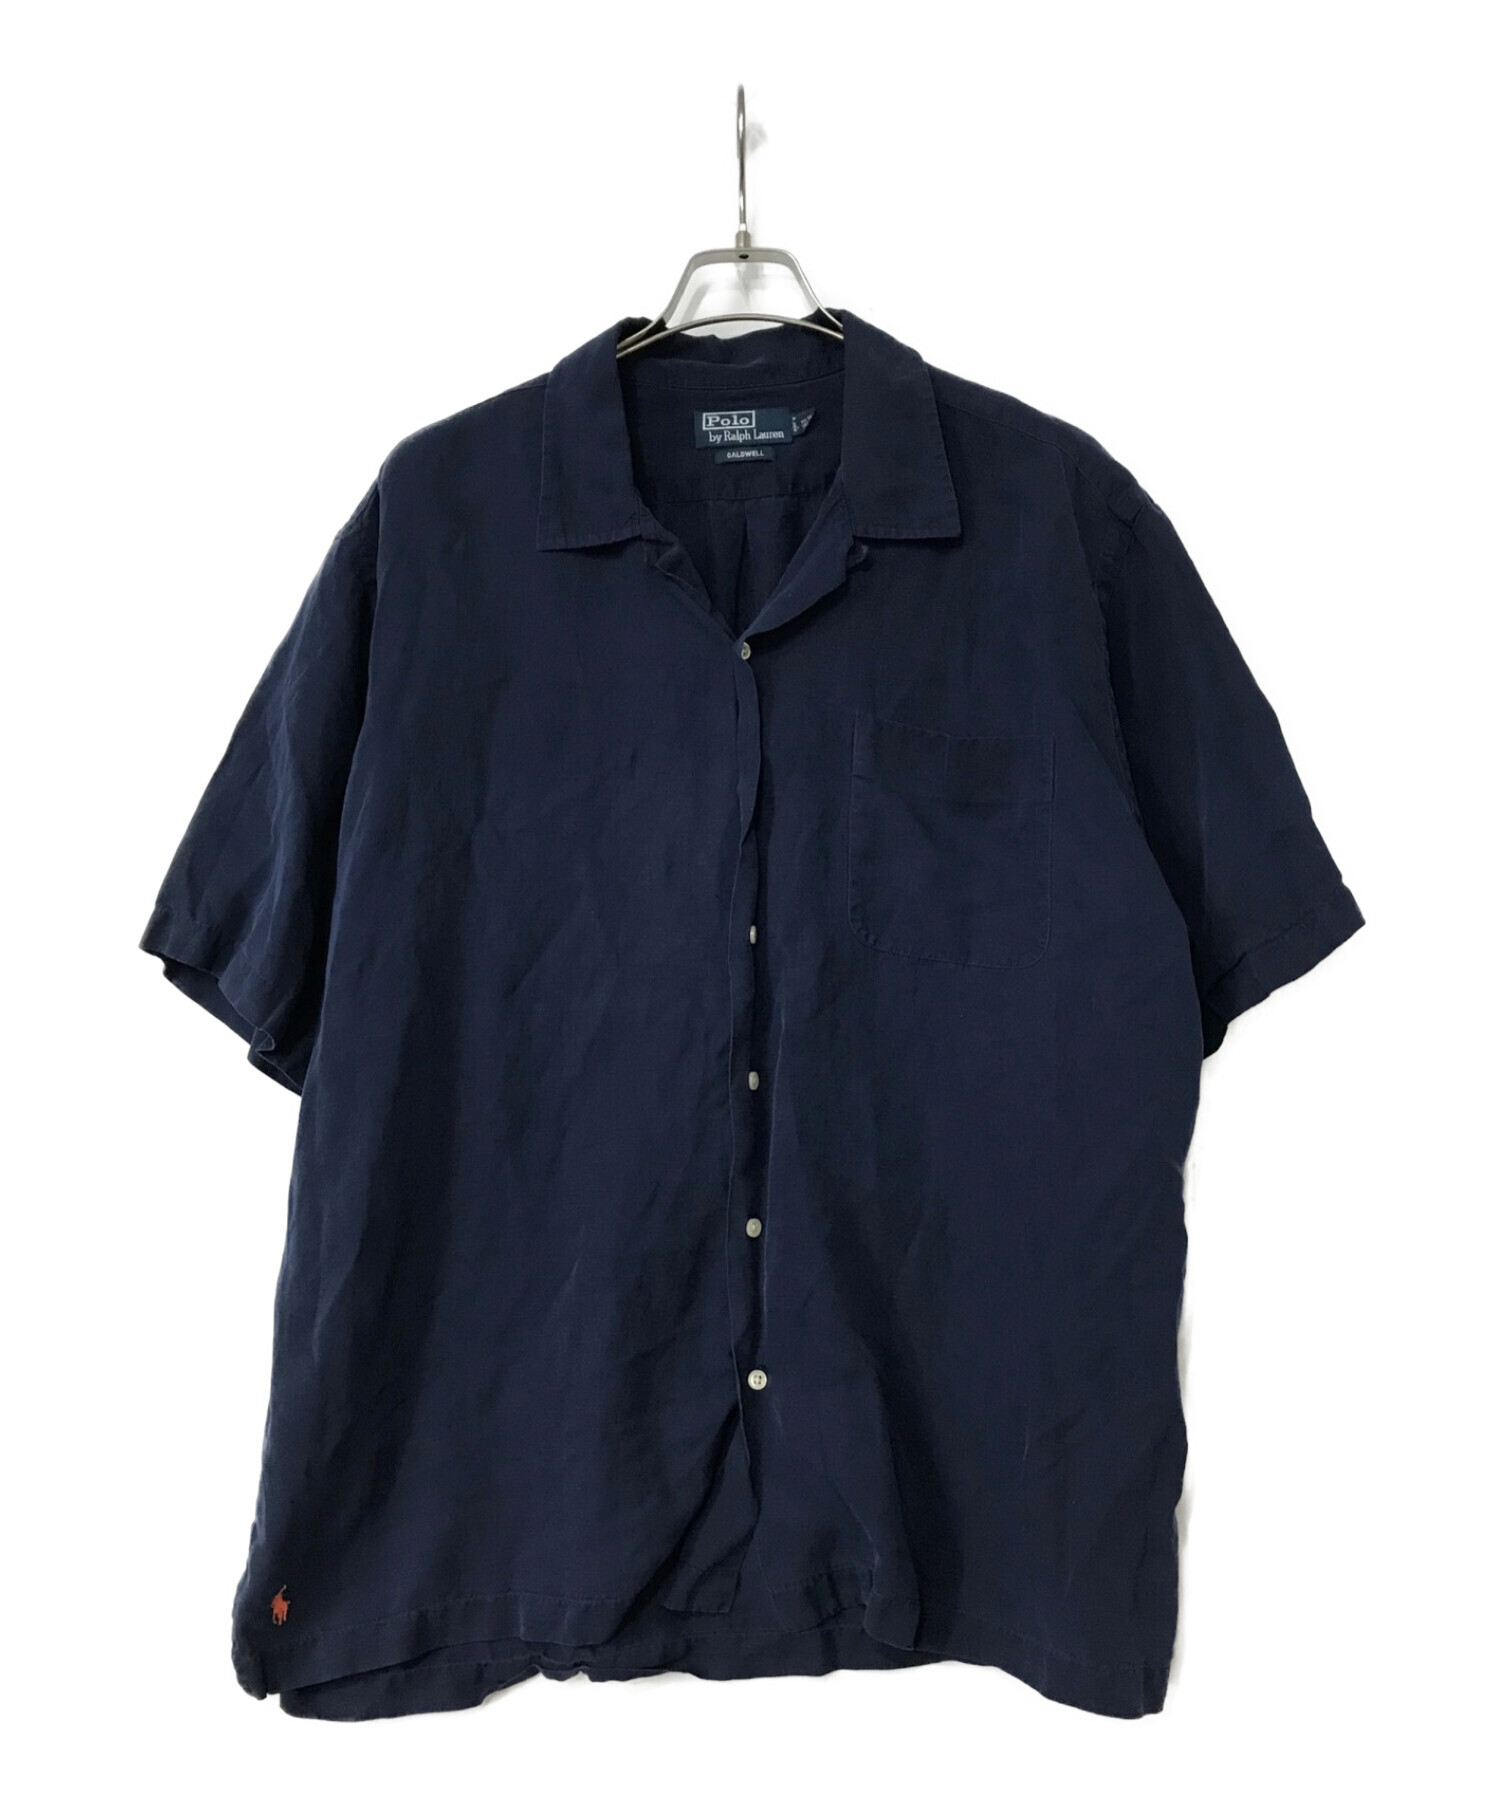 POLO RALPH LAUREN (ポロ・ラルフローレン) CALDWELLオープンカラーシャツ ネイビー サイズ:XL